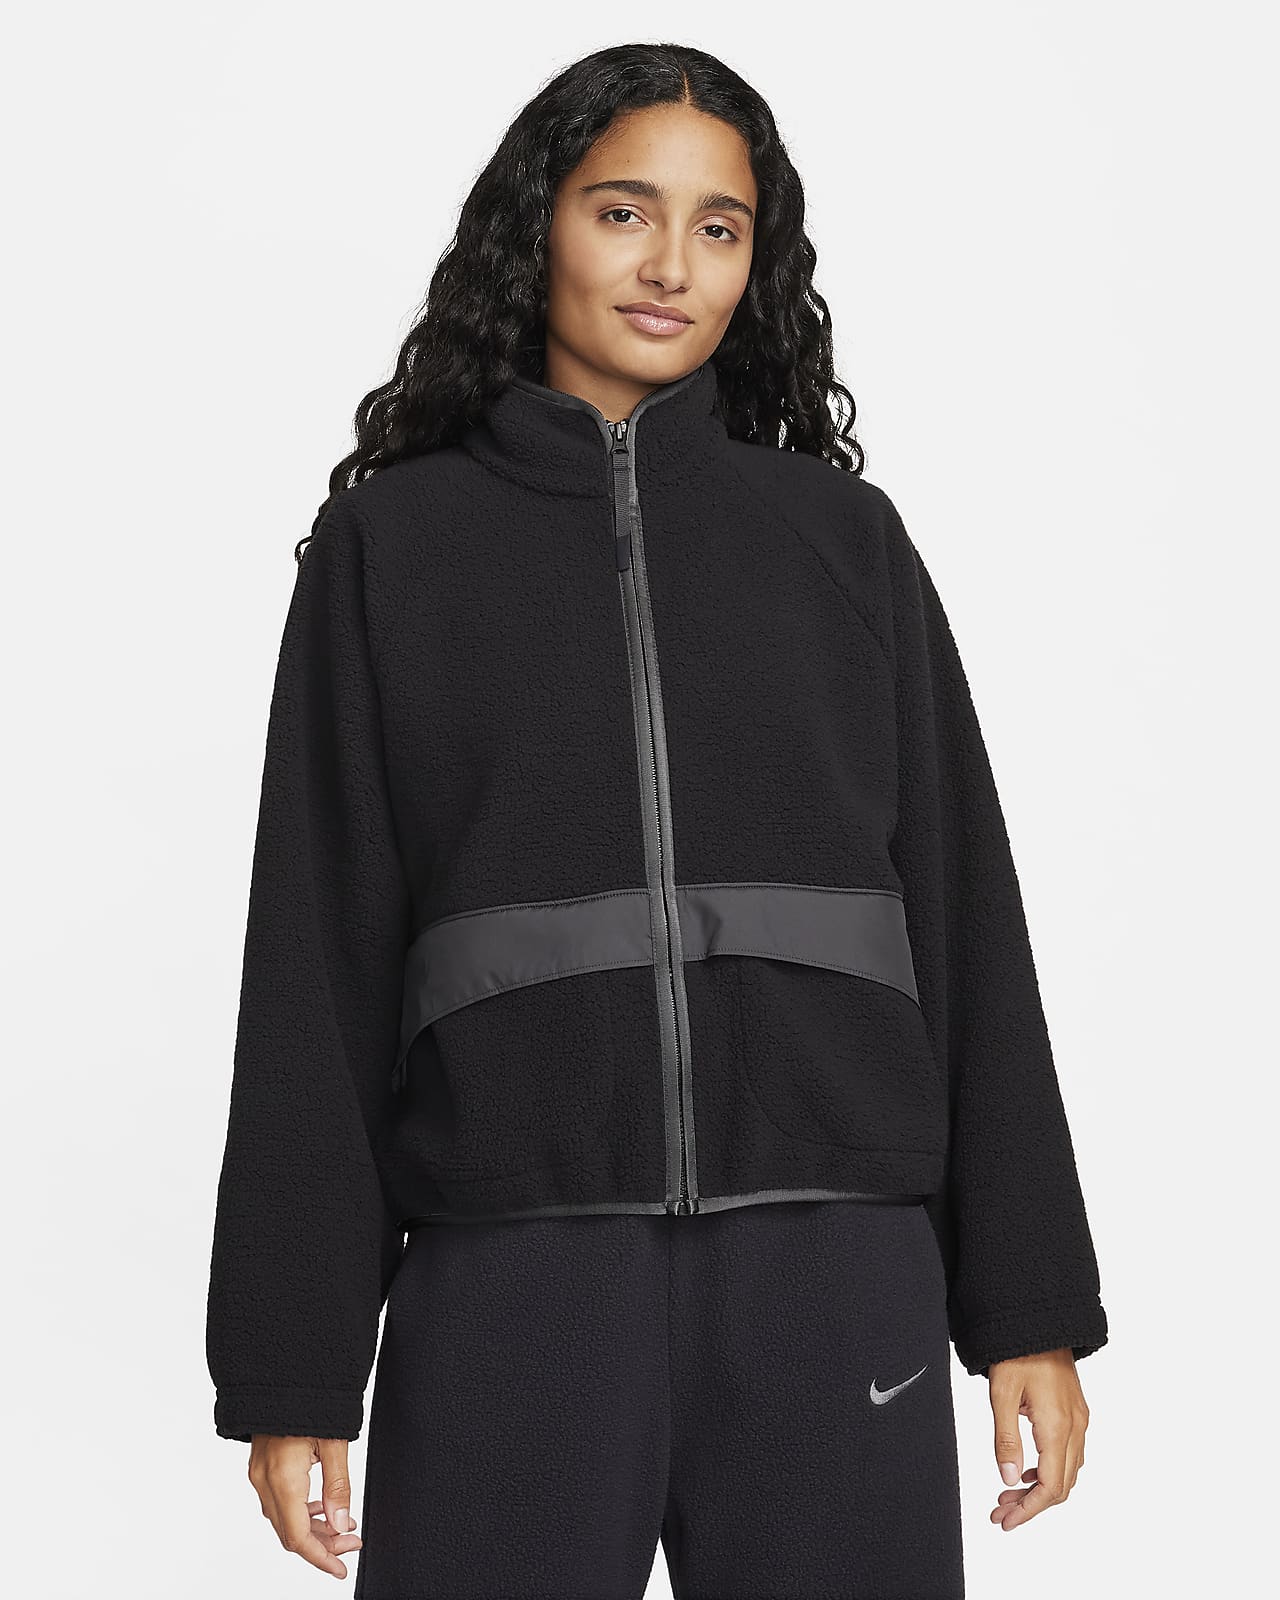 Nike Sportswear Women's High-Pile Fleece Jacket